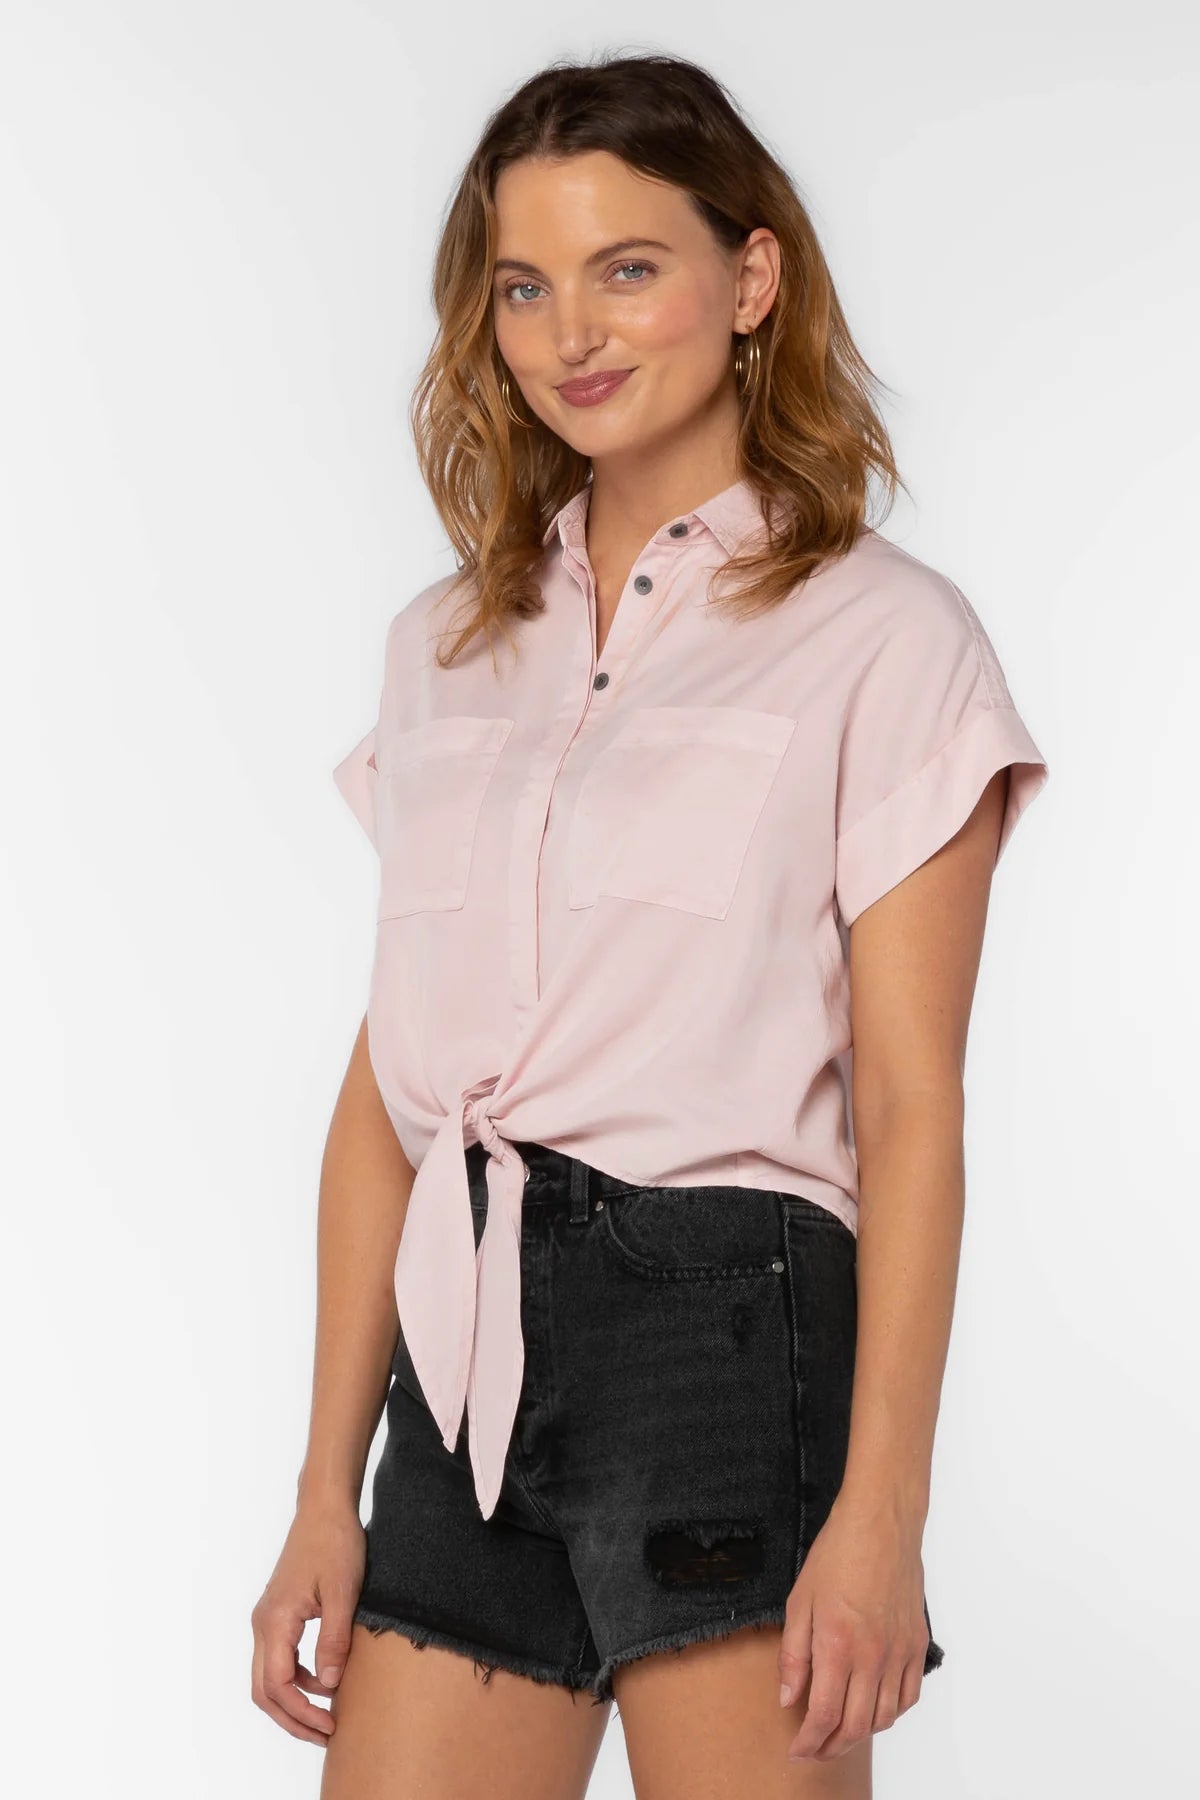 Zuria Shirt - Pale Pink